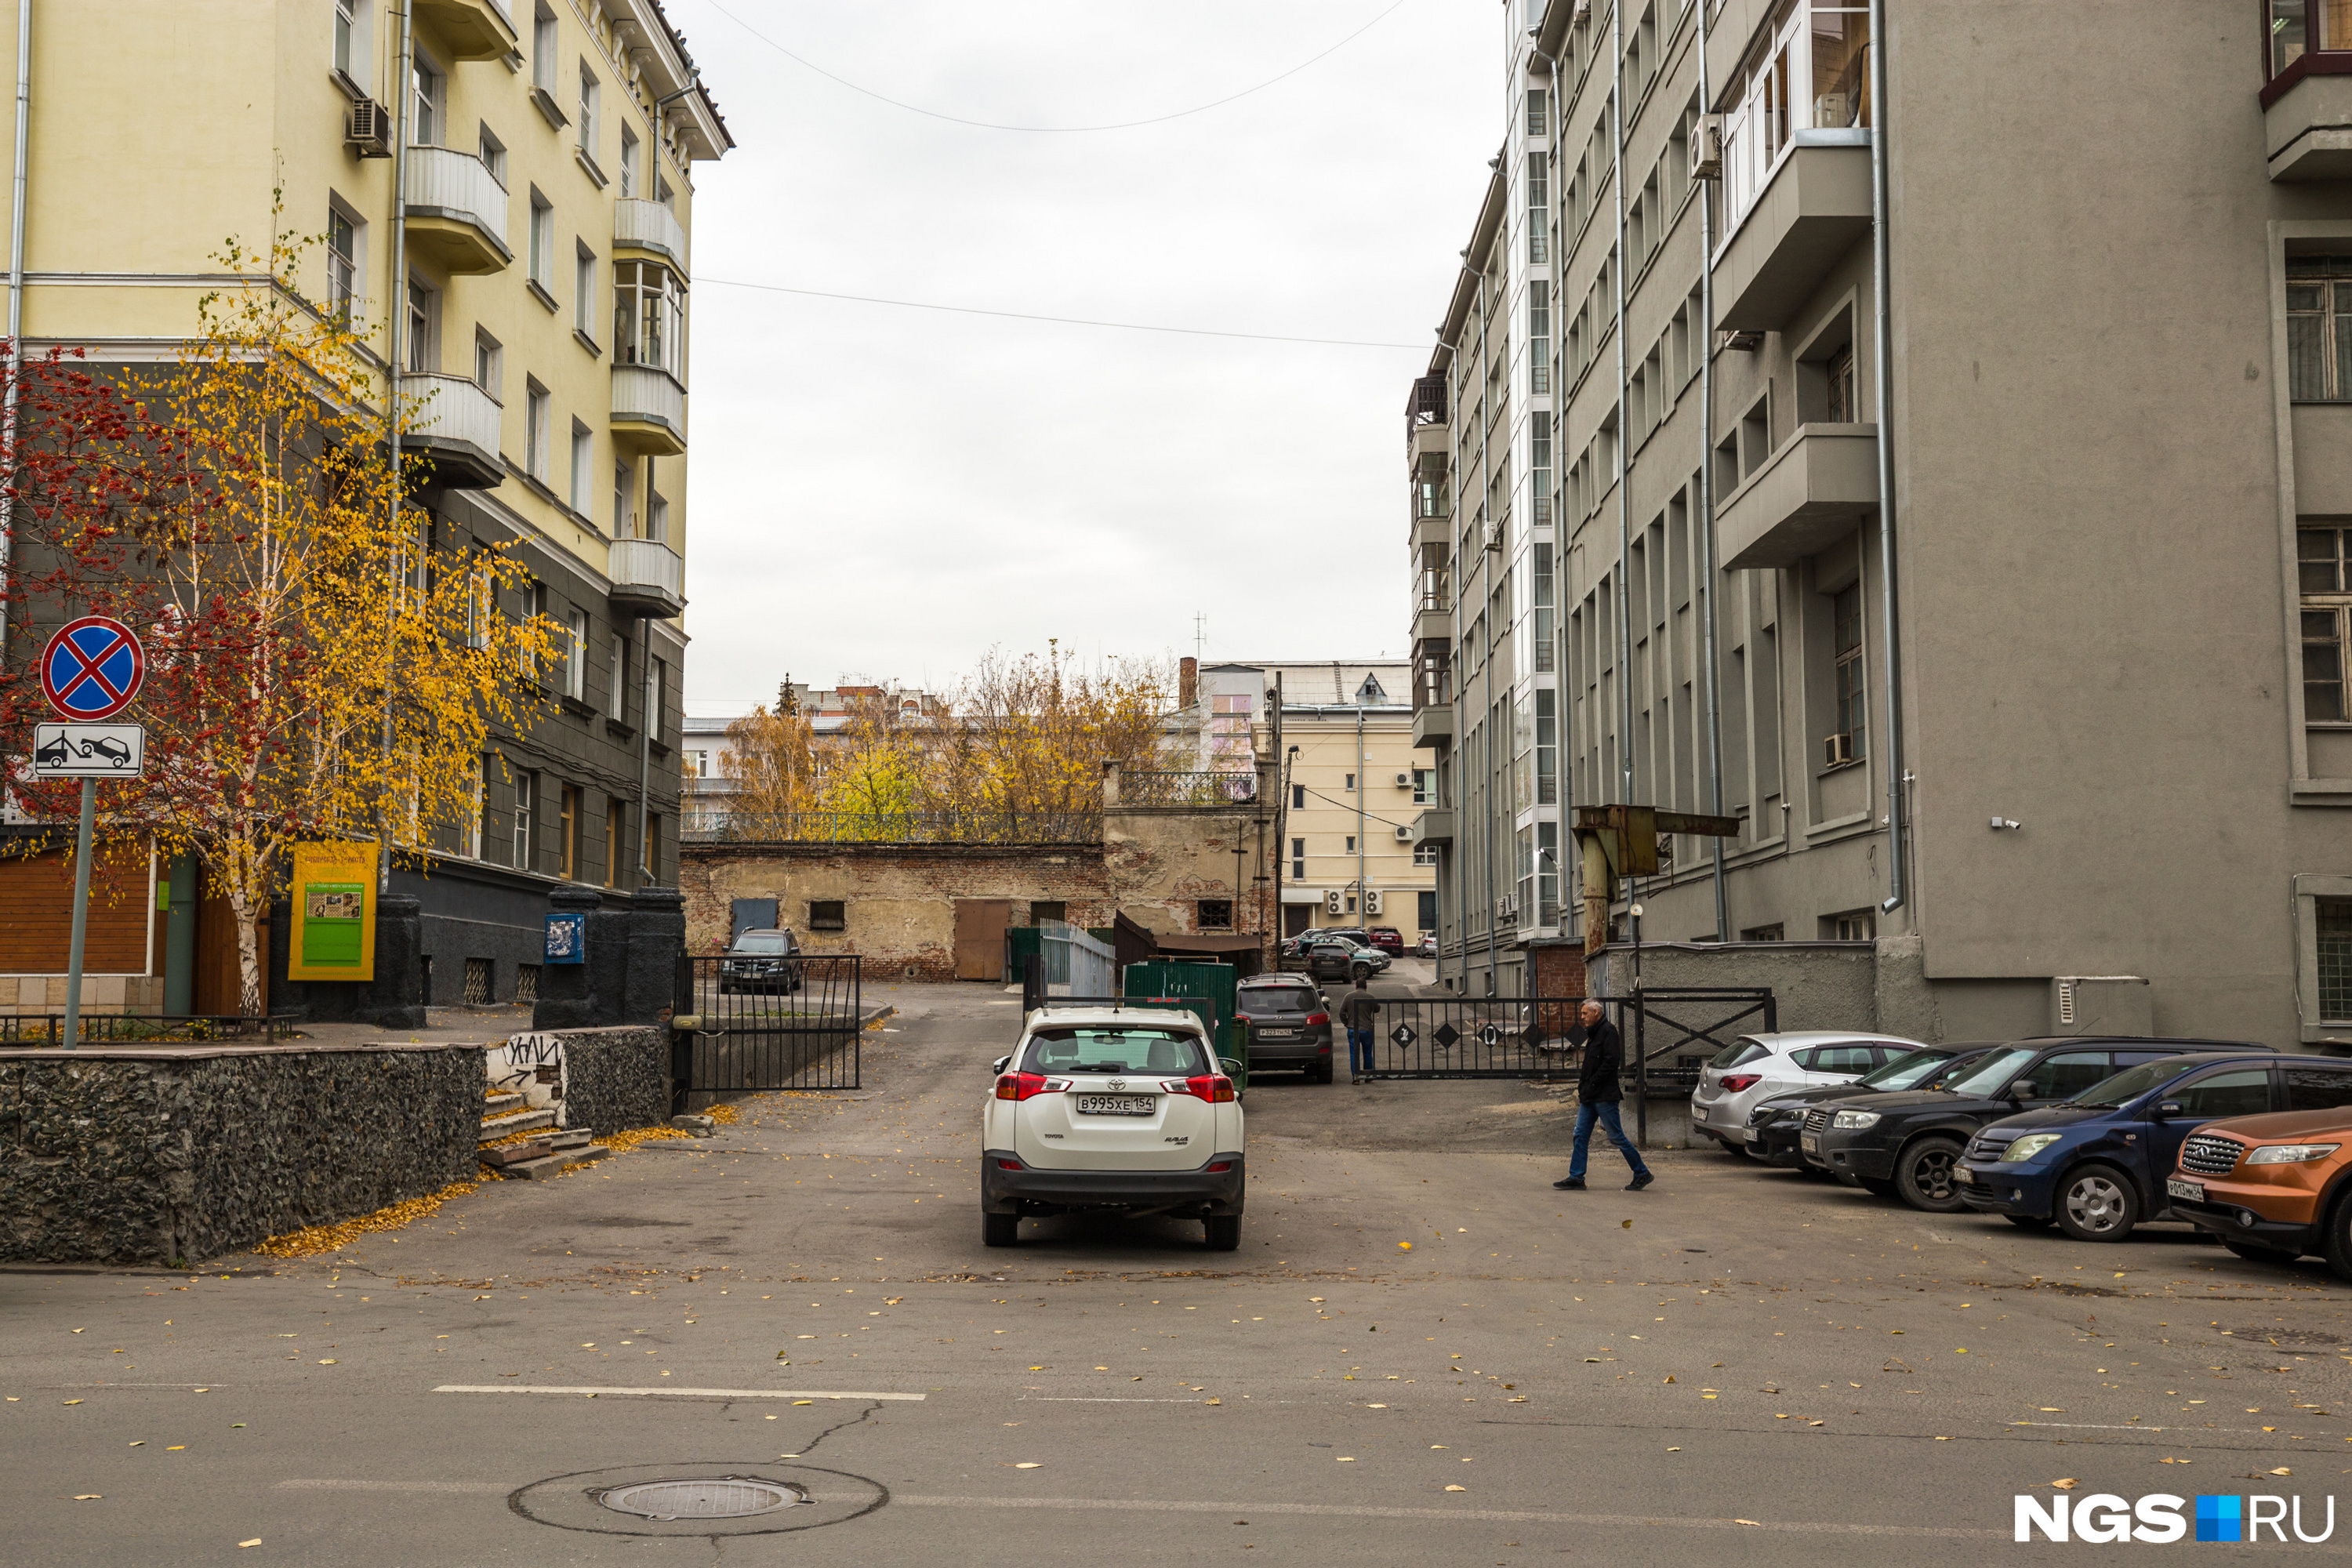 Улица Свердлова, возле здания правительства НСО